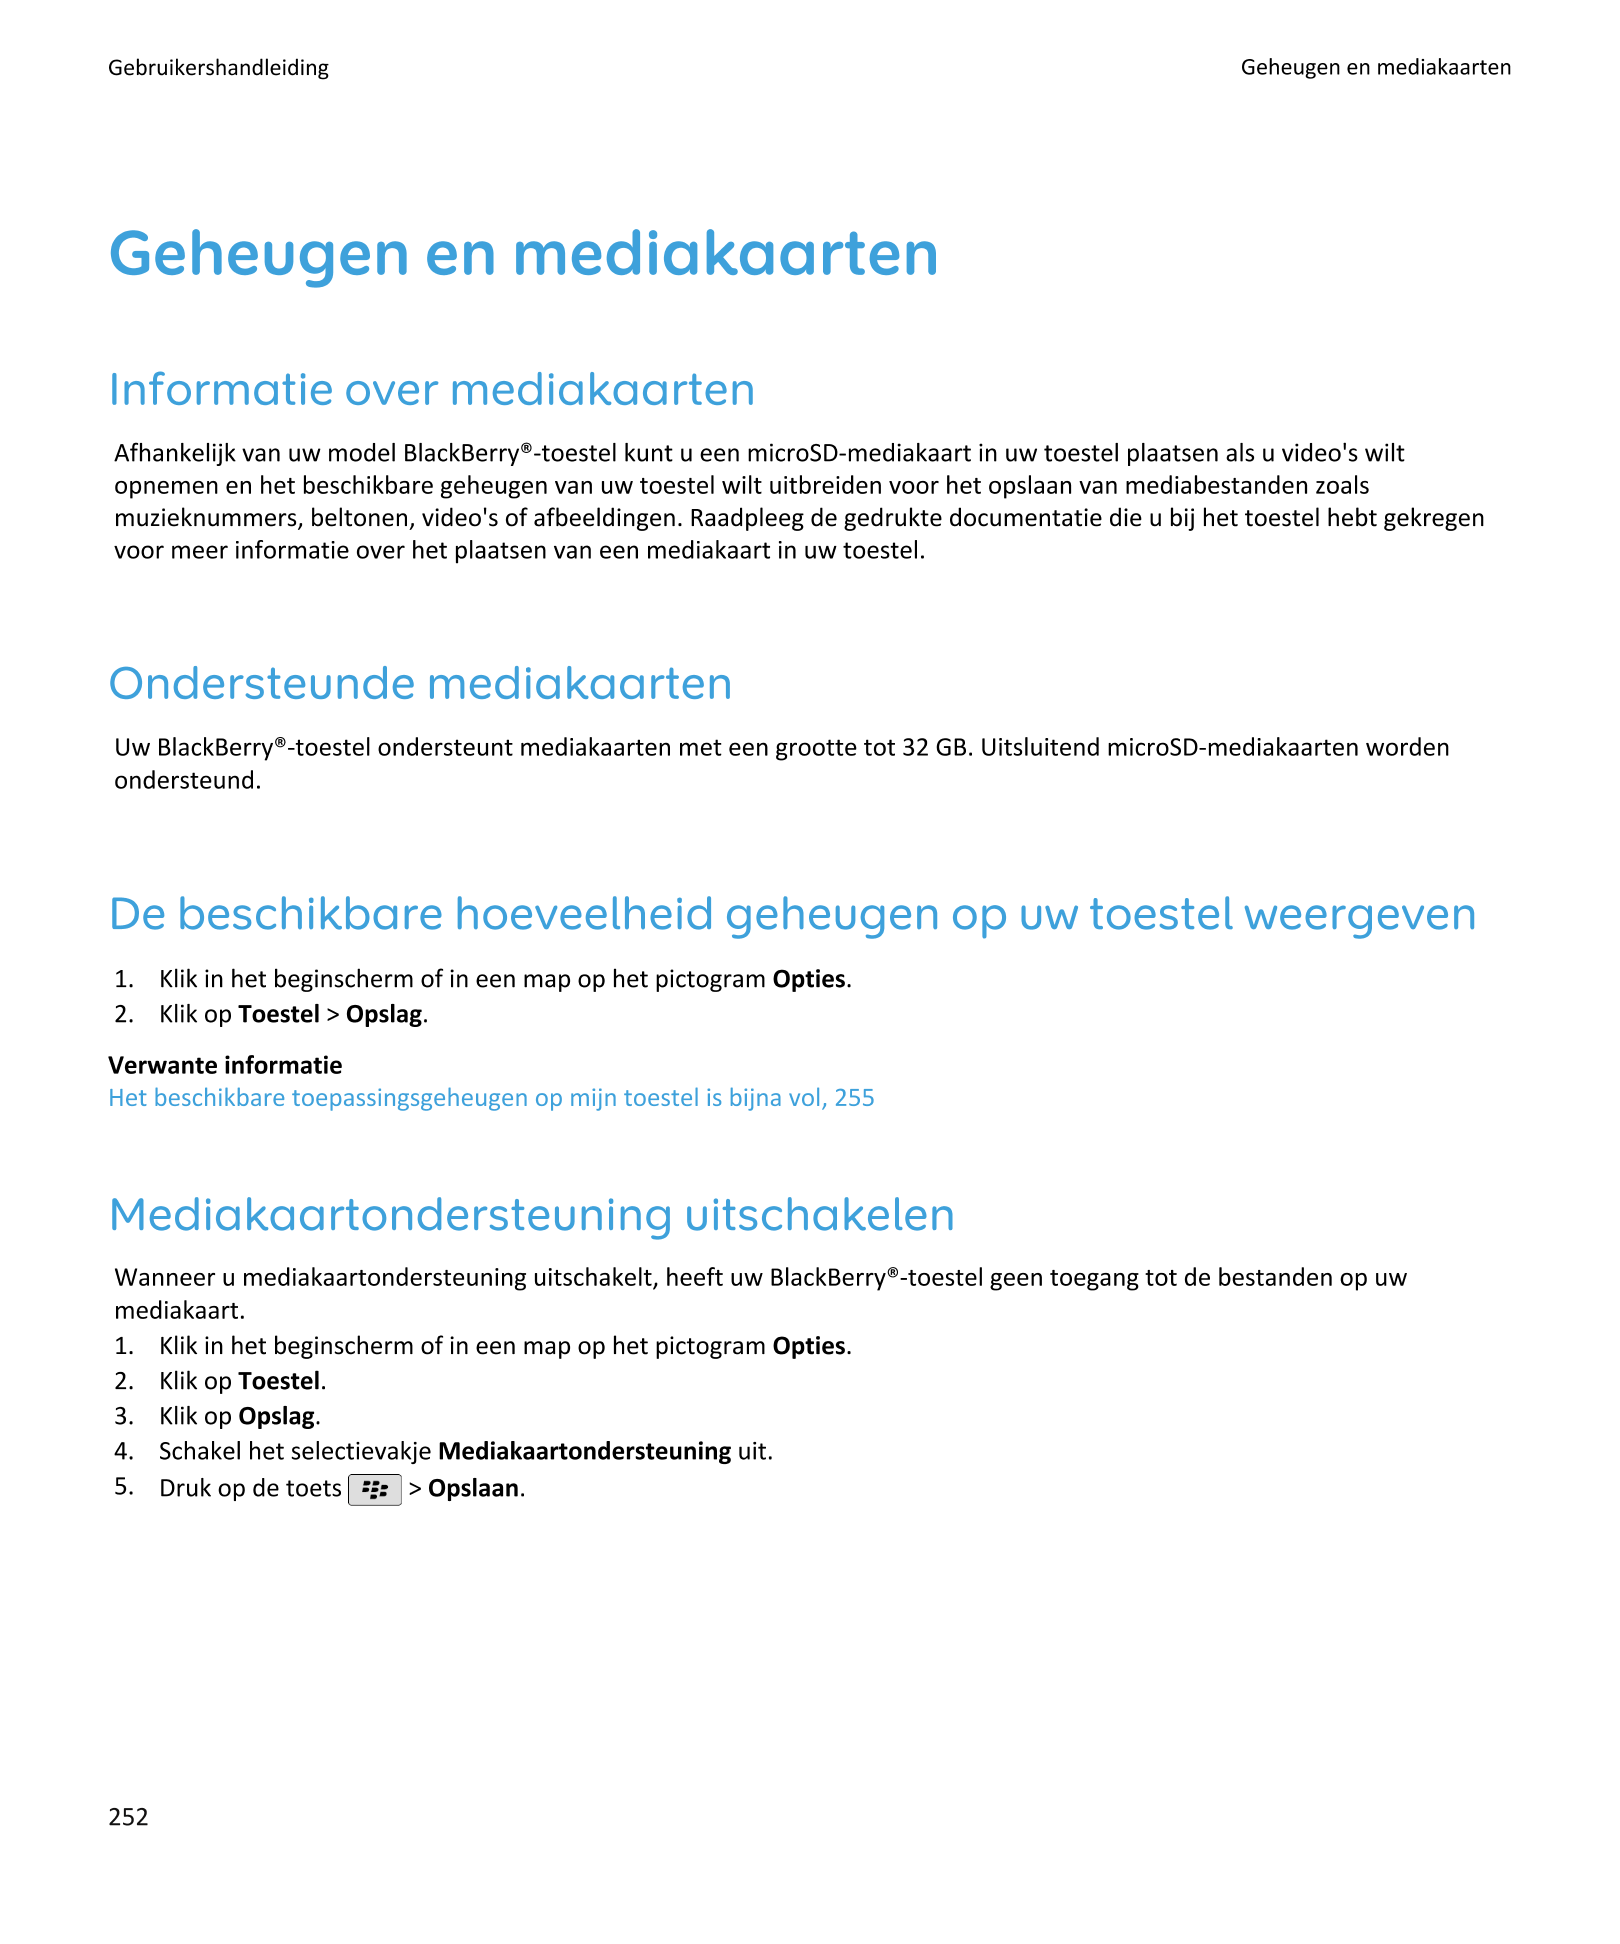 Gebruikershandleiding Geheugen en mediakaarten
Geheugen en mediakaarten
Informatie over mediakaarten
Afhankelijk van uw model Bl